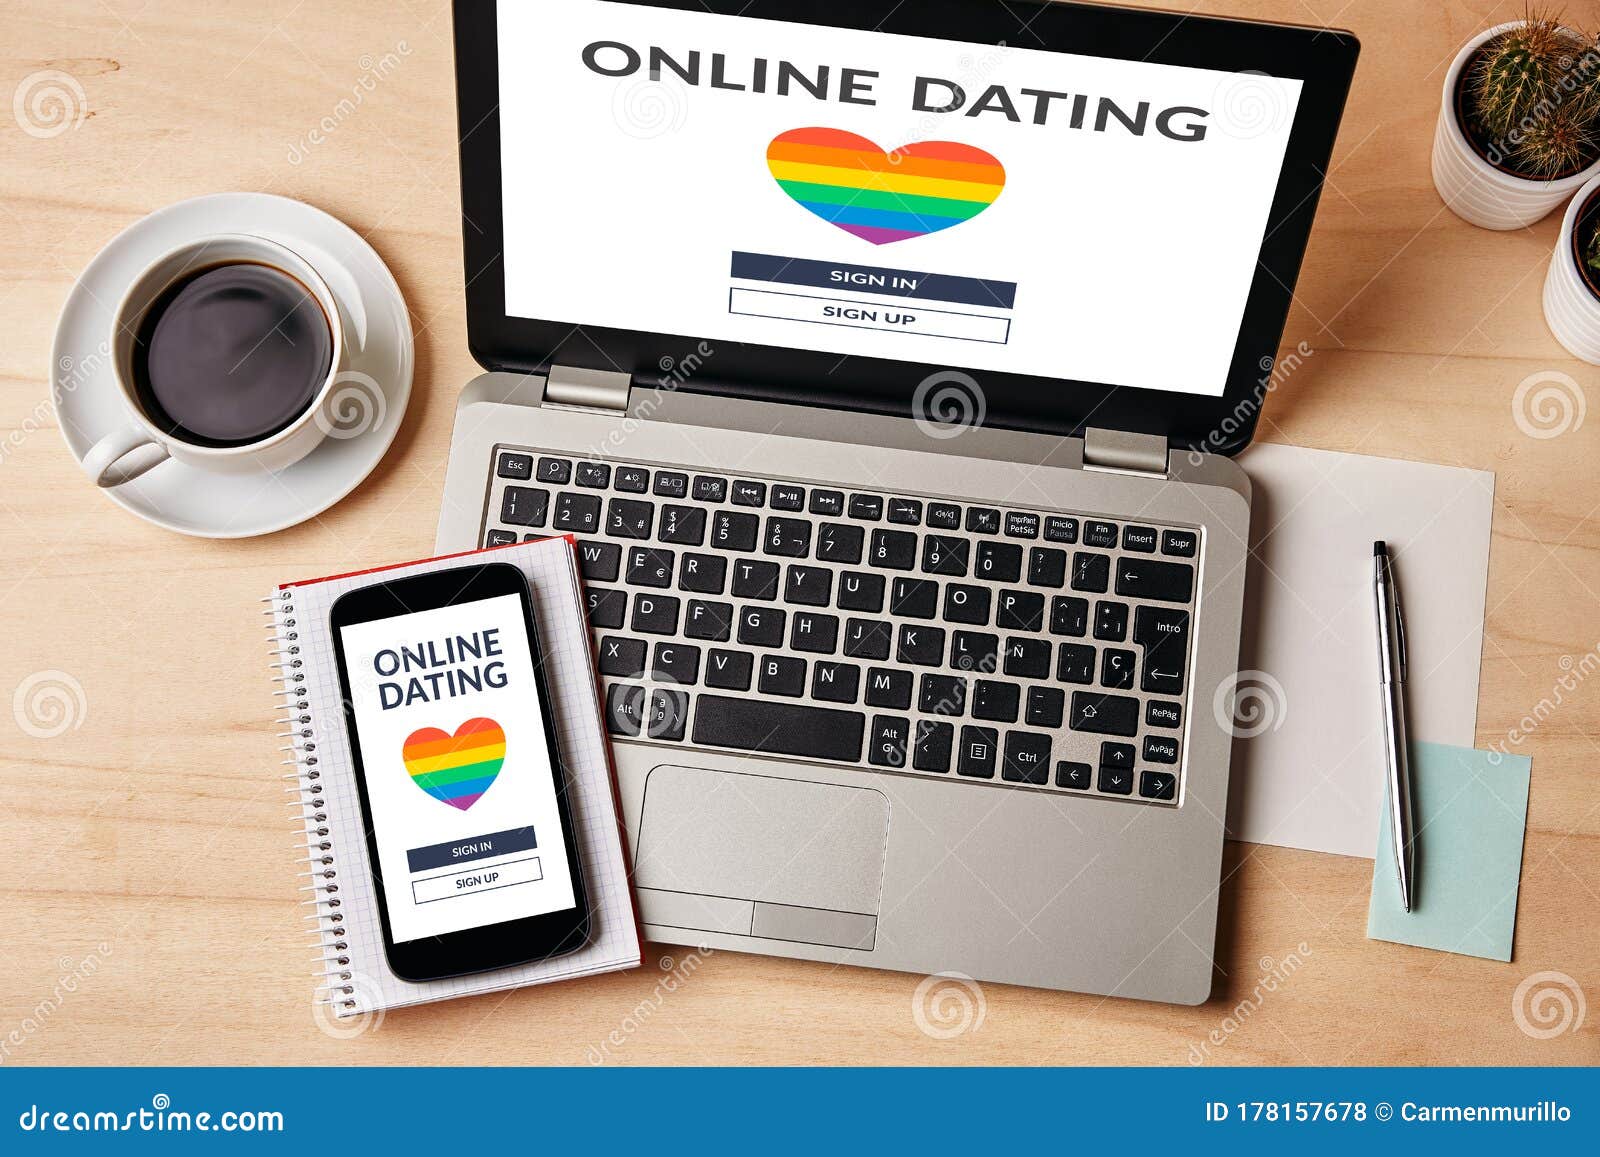 alt online dating